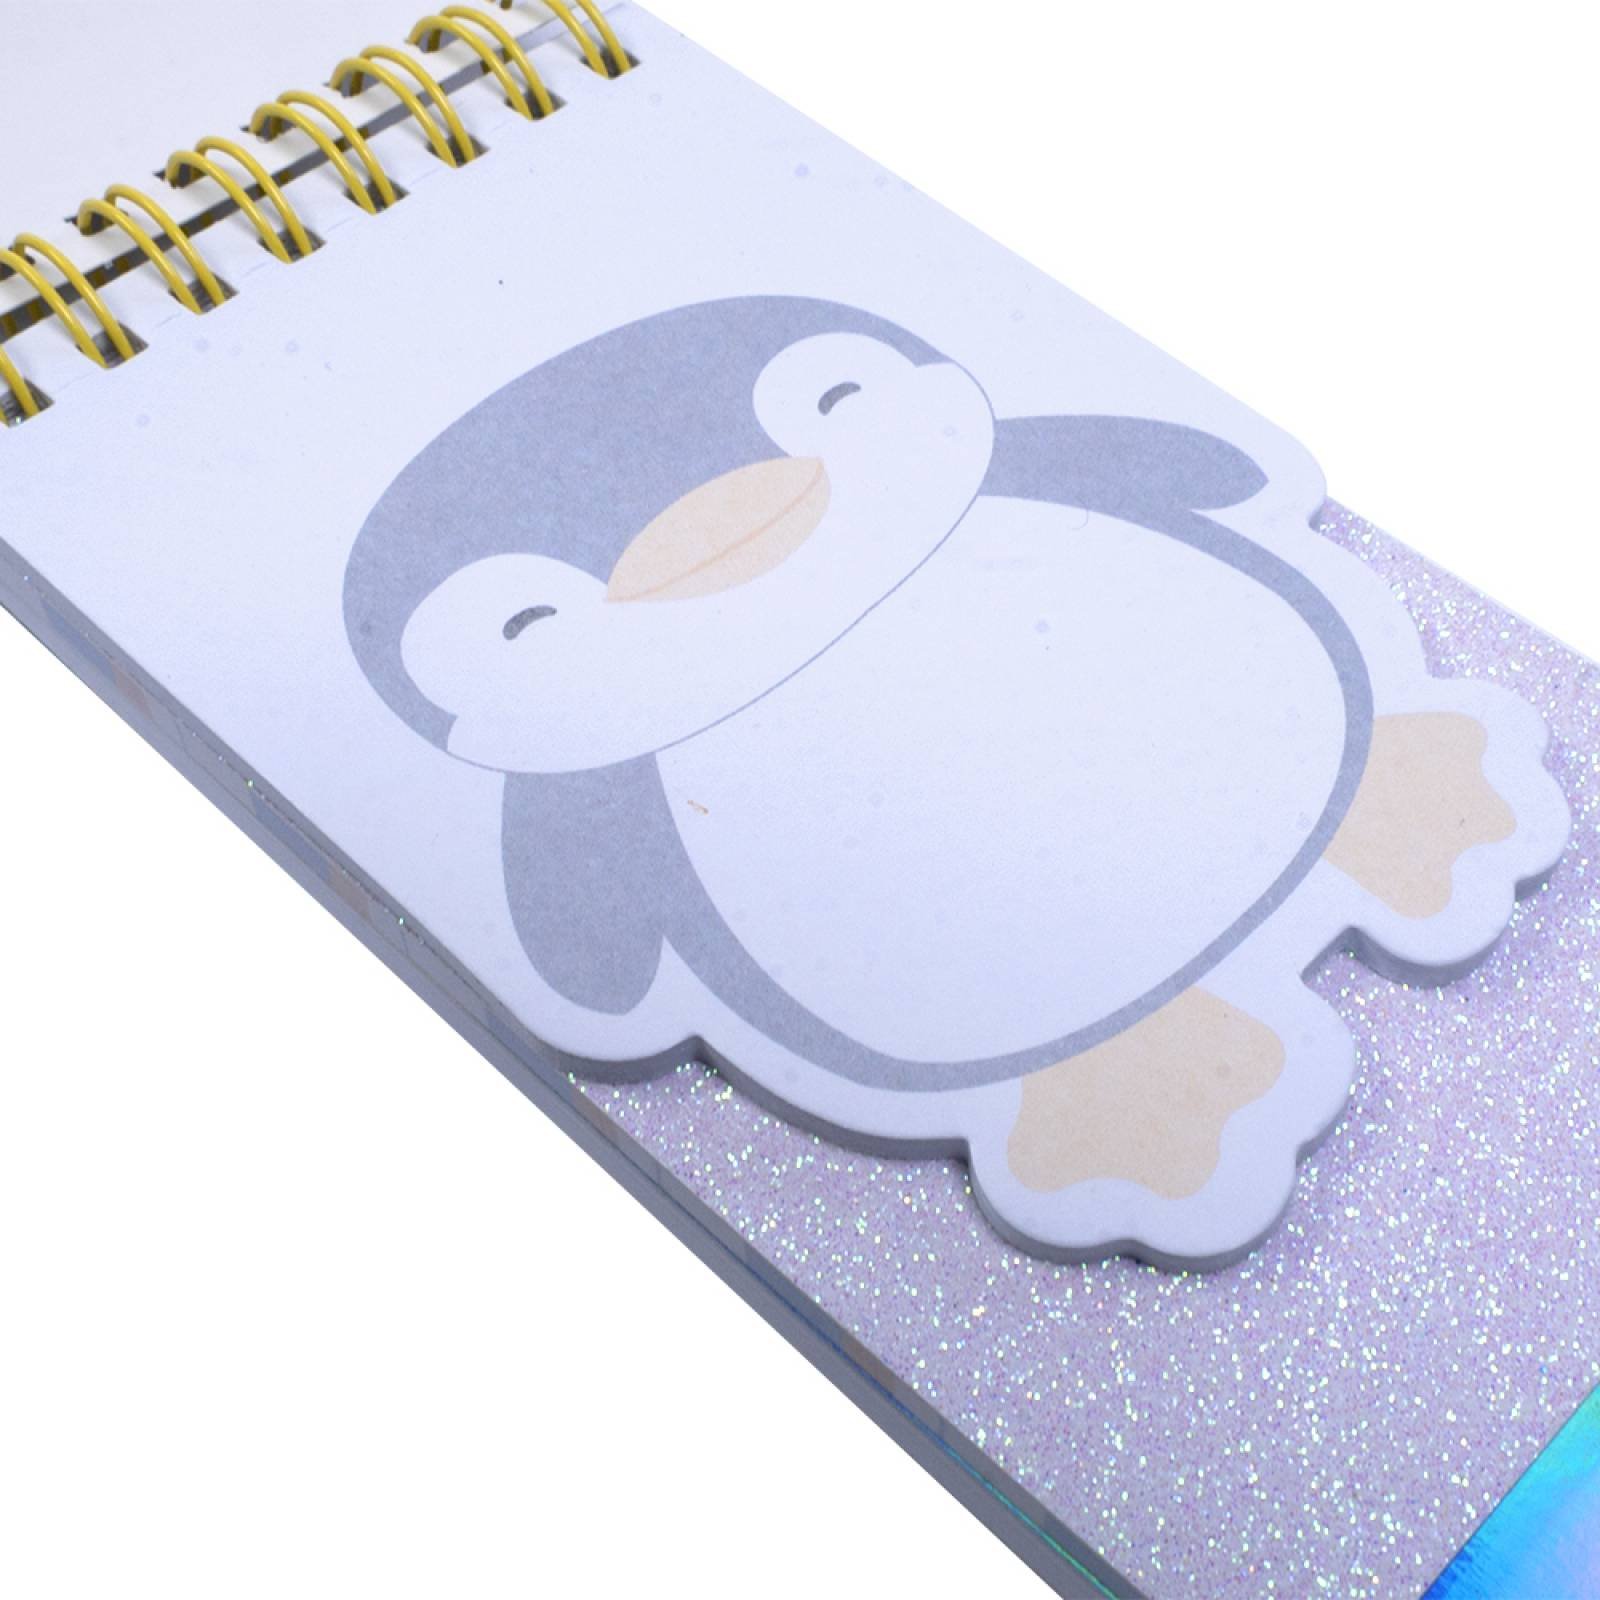 Cuaderno de Espiral Ping ino Rosa   Penguin Series